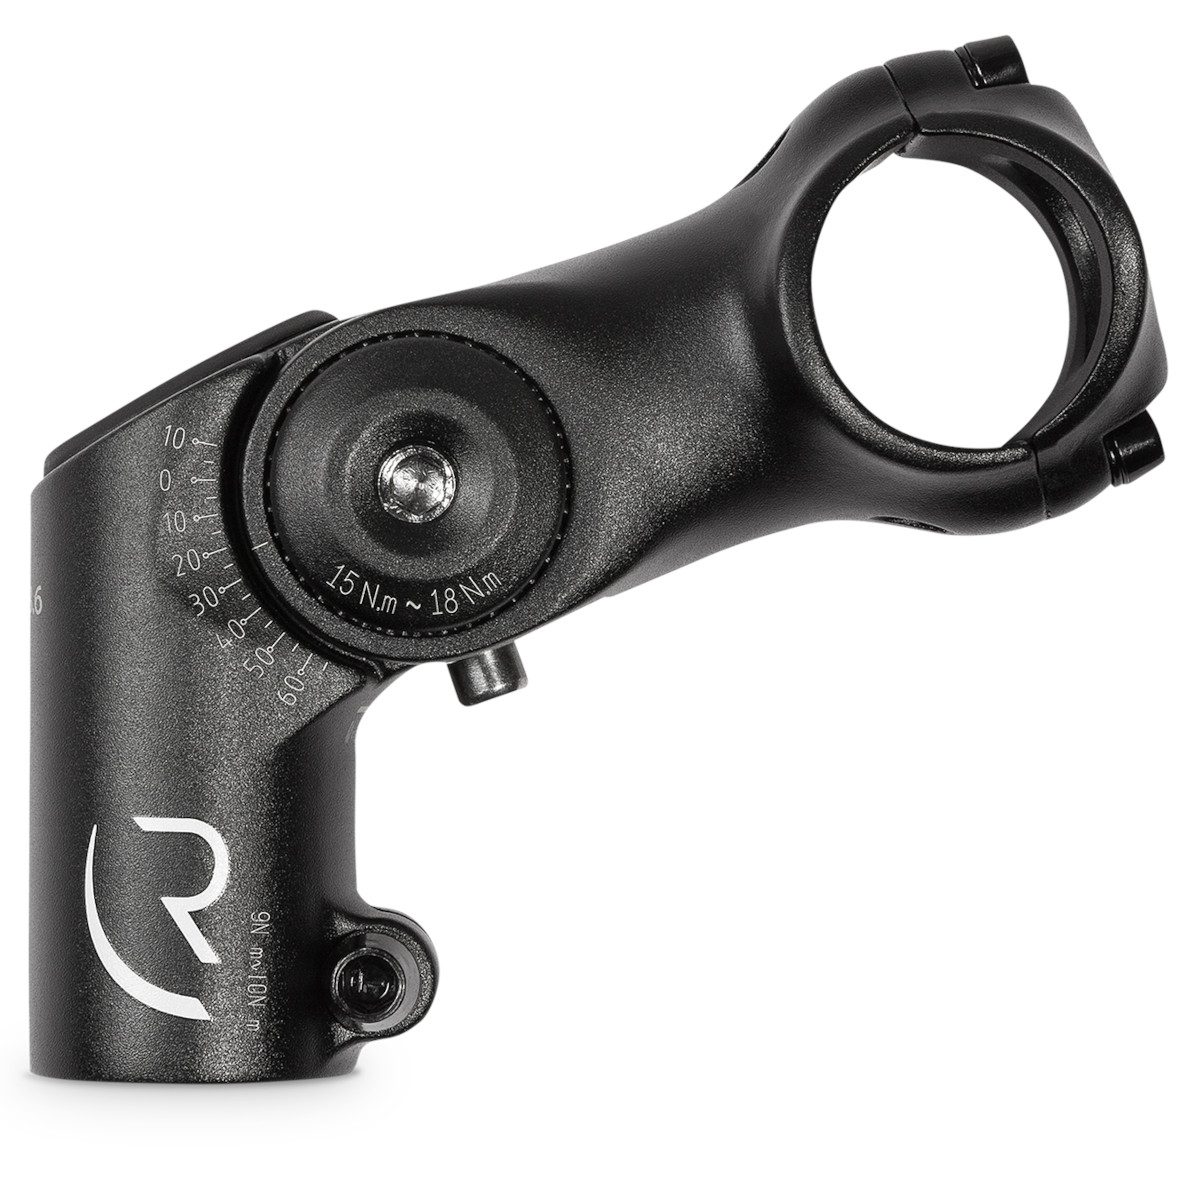 Productfoto van RFR Adjustable MTB Stem - Rised - 31.8mm